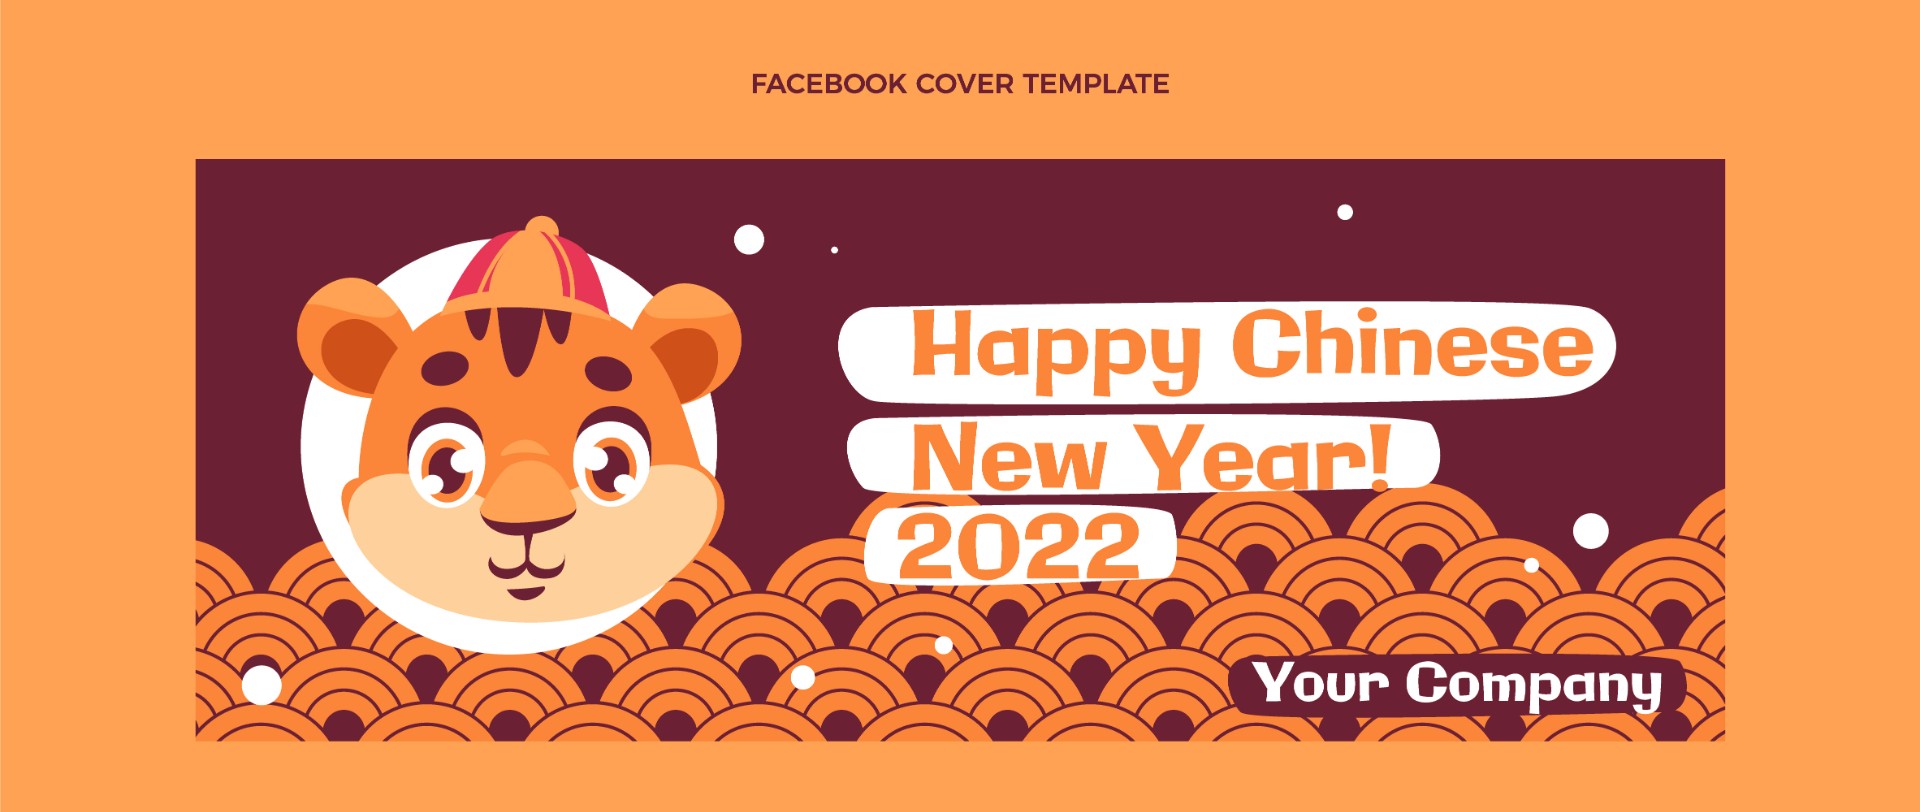 中国新年社交媒体封面横幅模板0